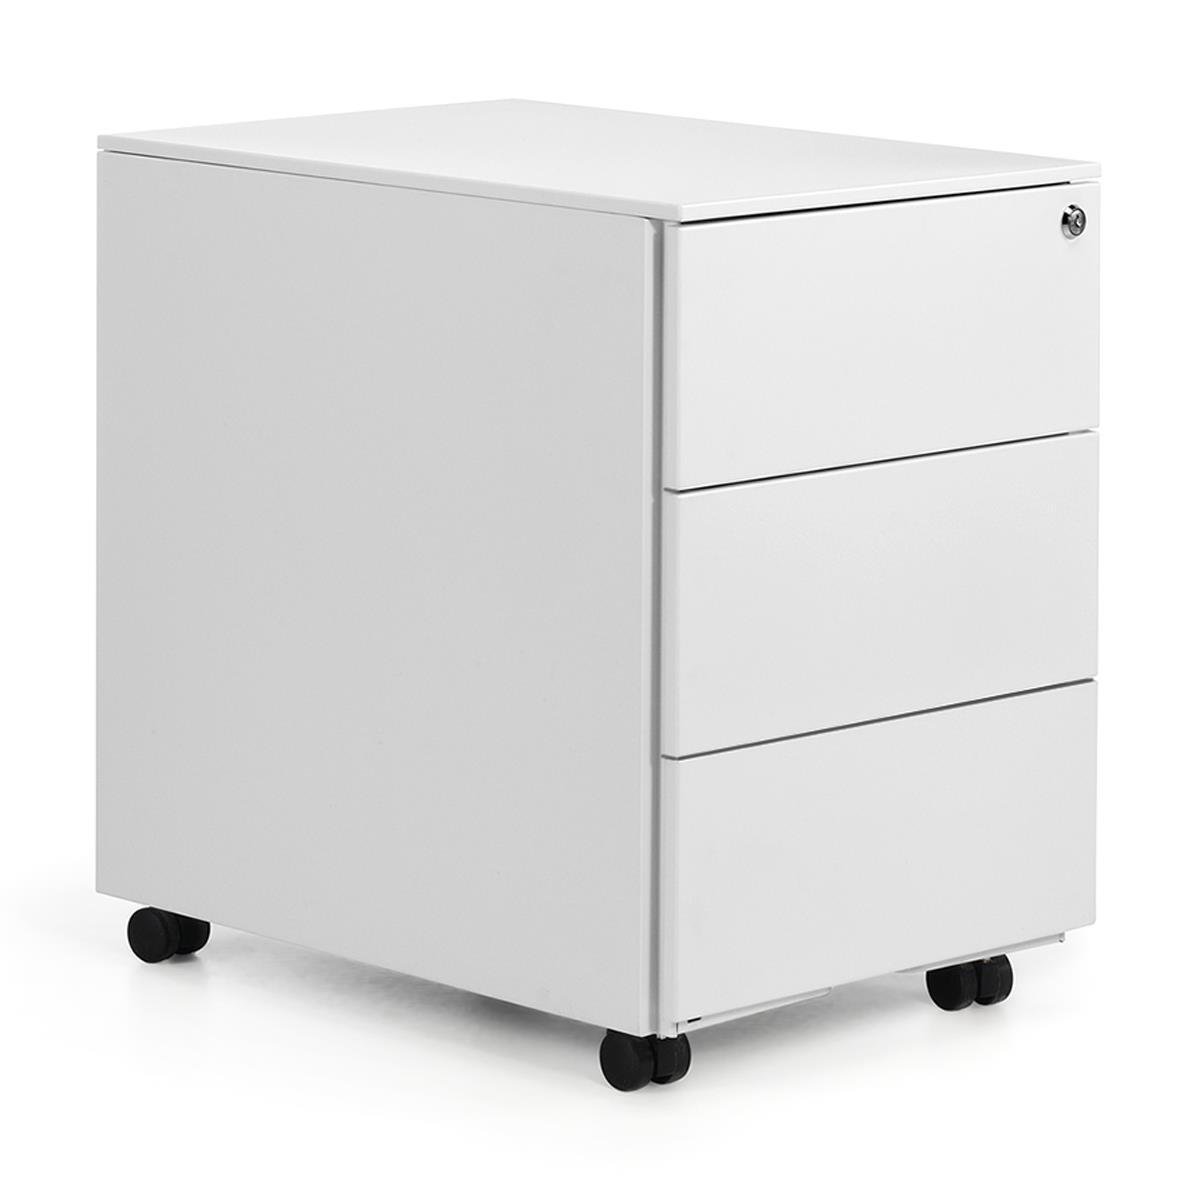 Büroschrank SEREN, Schreibtischcontainer, 3 Schubladen, Abmessungen 40x54x55 cm, Farbe Weiß